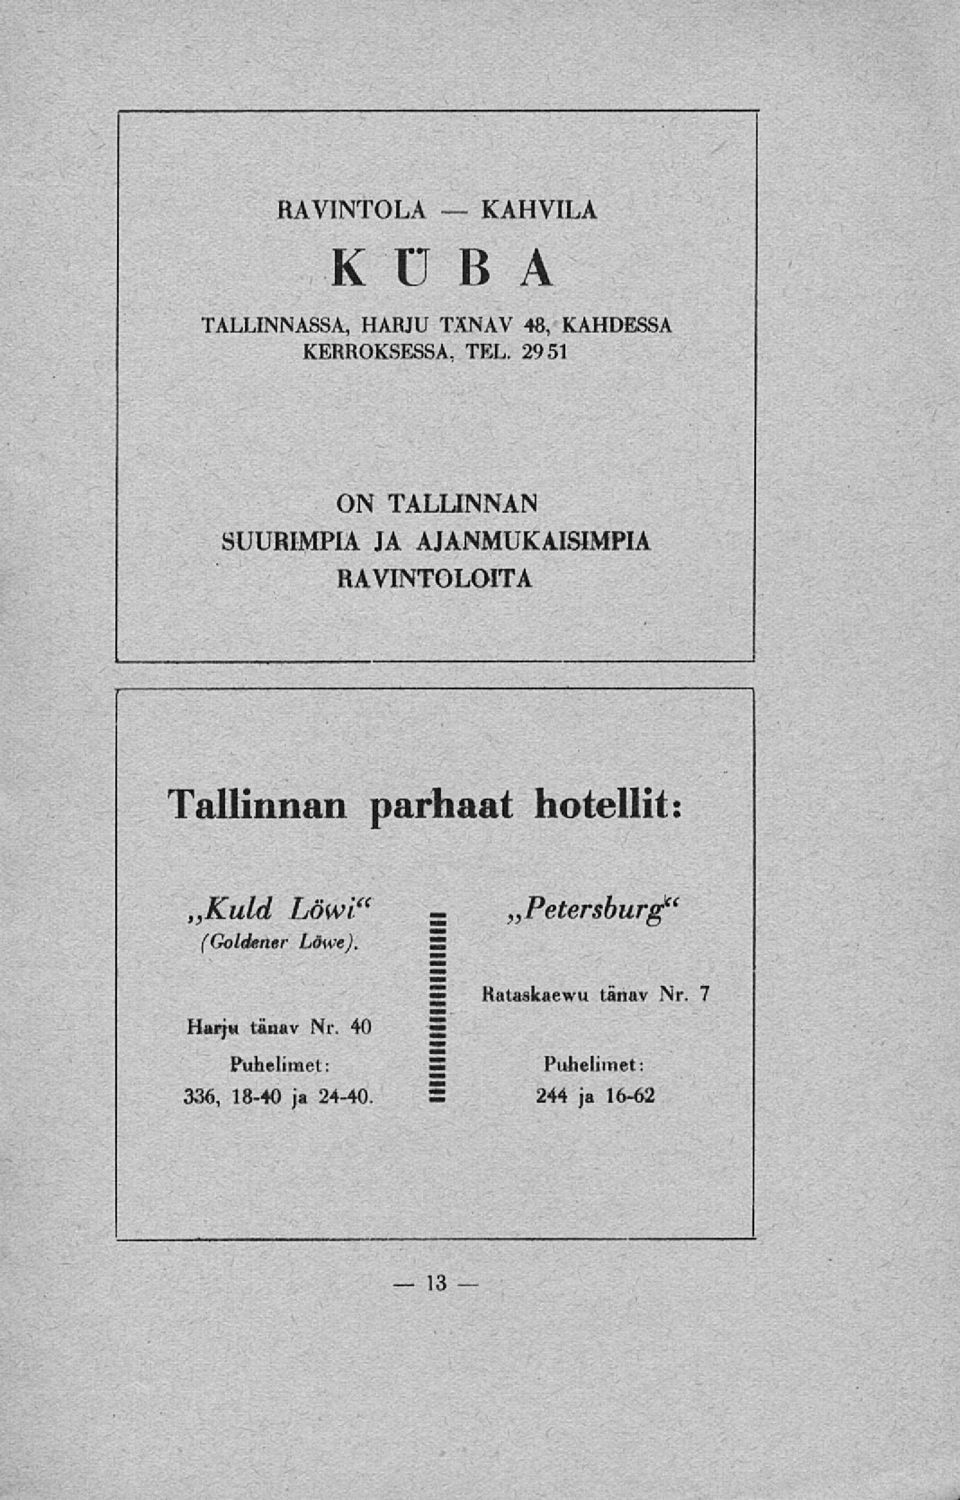 2951 ON TALLINNAN SUURIMPIA JA AJANMUKAISIMPIA RAVINTOLOITA Tallinnan parhaat